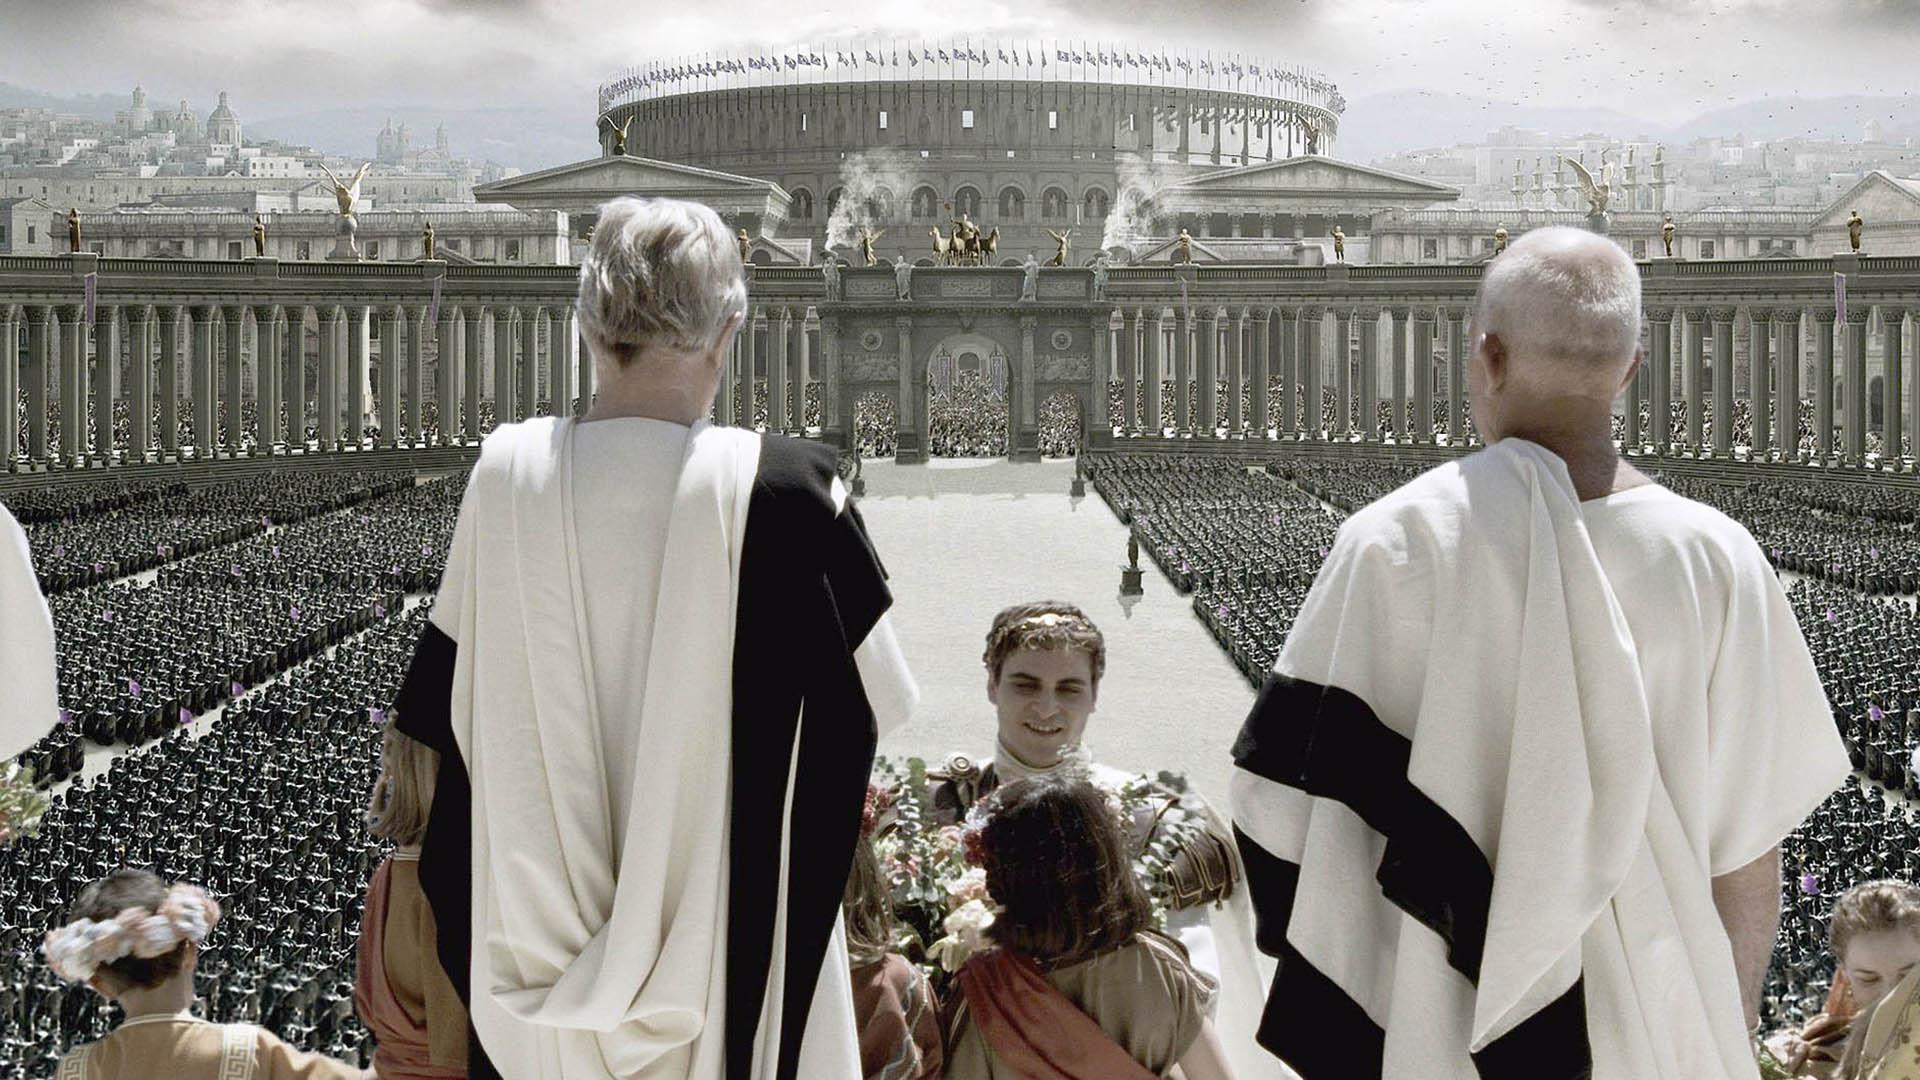 نمایی از شهر رم و کولوسئوم در فیلم gladiator با حضور واکین فینیکس